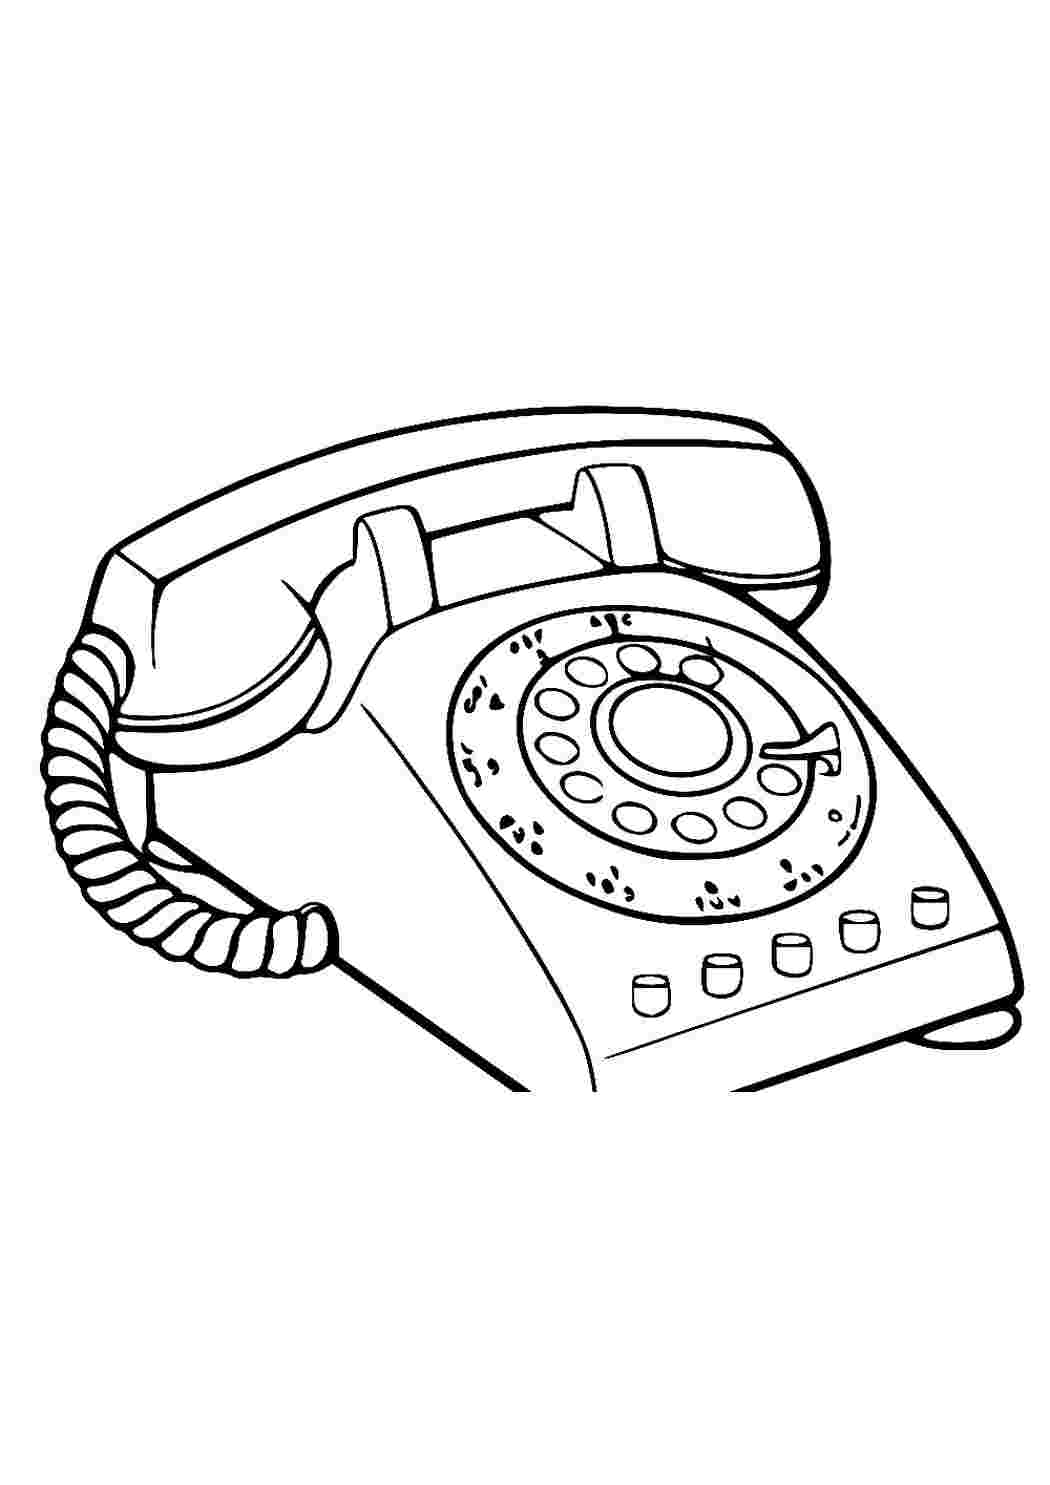 Телефон нарисованный